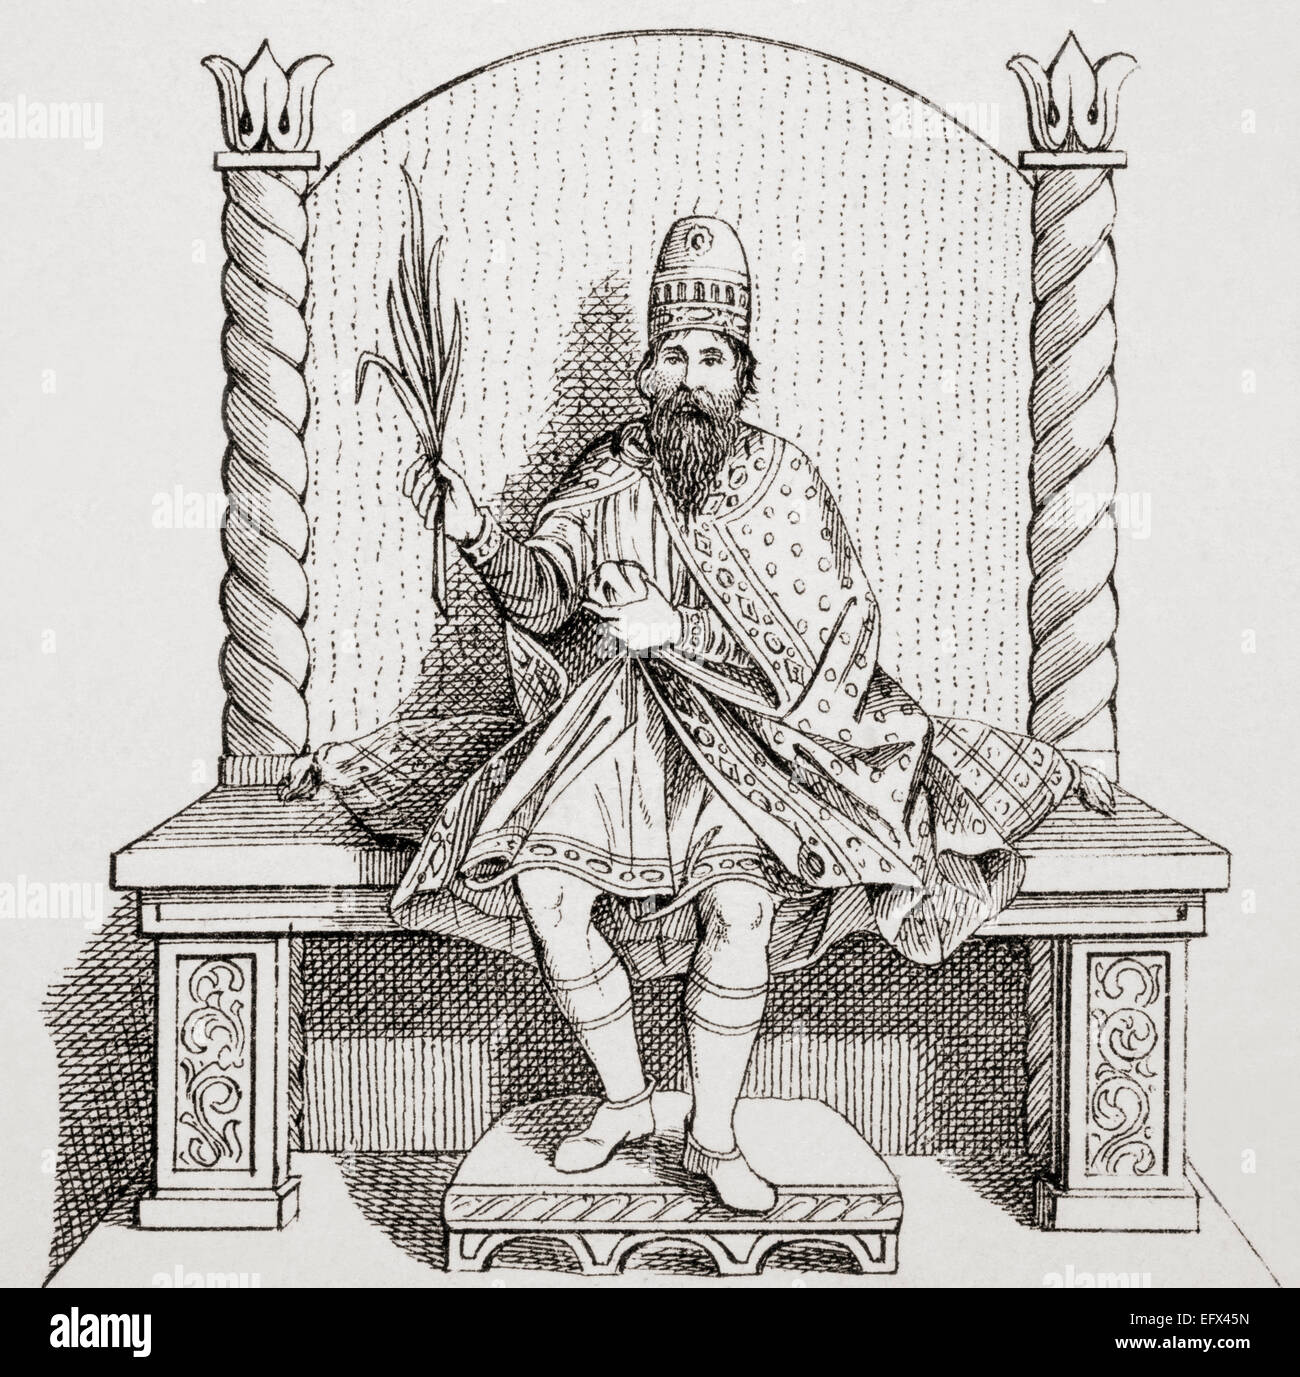 Bonifatius III der Toskana, Markgrafen der Toskana, aka Bonifatius IV oder Bonifatius von Canossa, 985-1052. Stockfoto